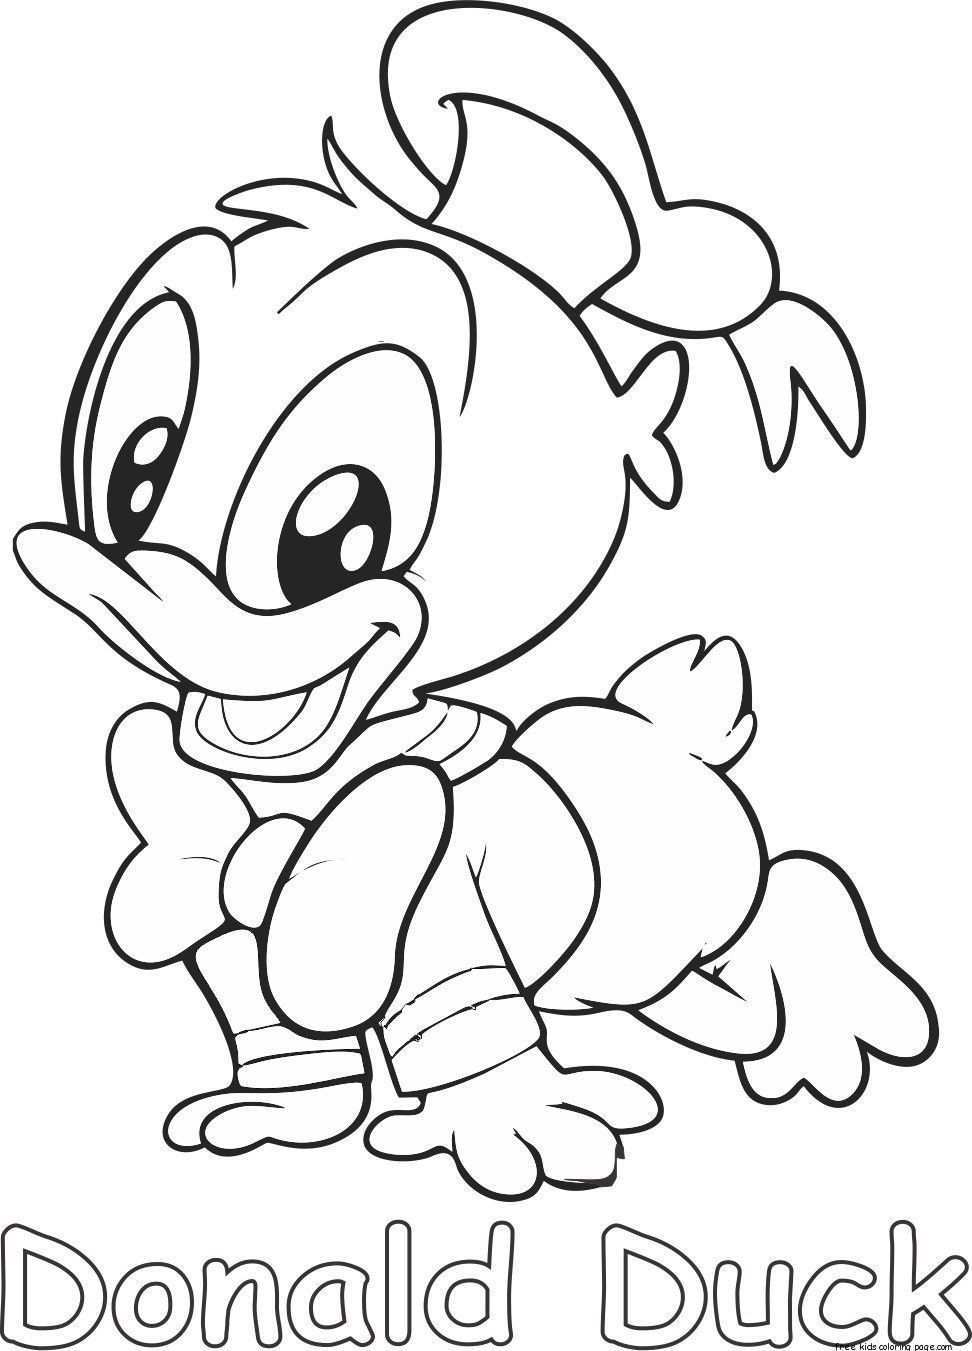 Donald Duck Baby Kleurplaat Laat Je Kinderen Genieten Van Het Inkleuren Van Personages Uit Hun Favoriete Personagesho Kleurplaten Disney Kleurplaten Kleurboek